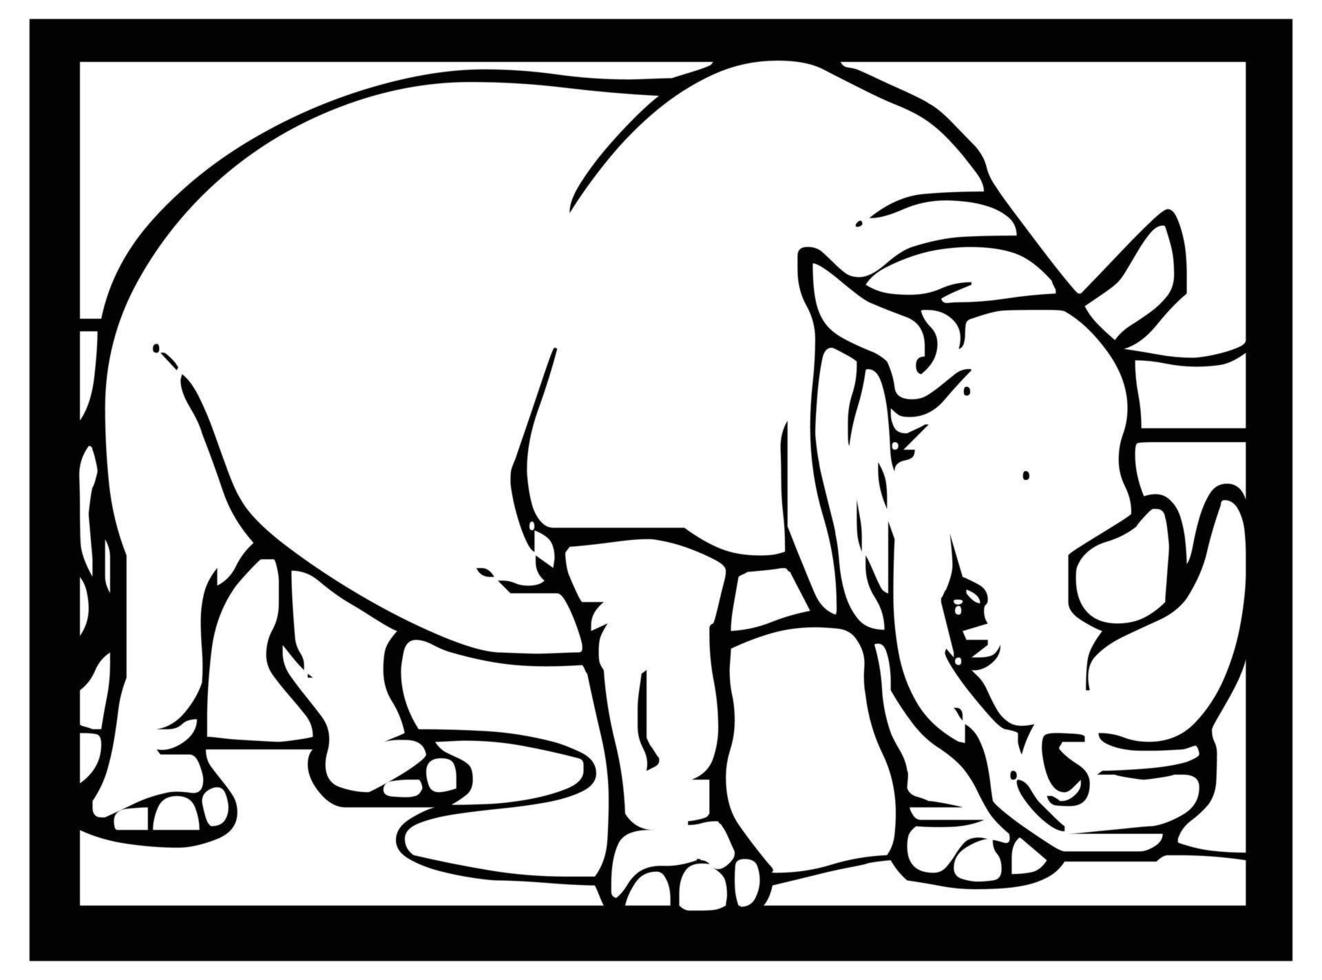 esboços de rinoceronte em fundo preto e branco em um quadro para quadrinhos ou aprendendo a colorir para crianças. vetor